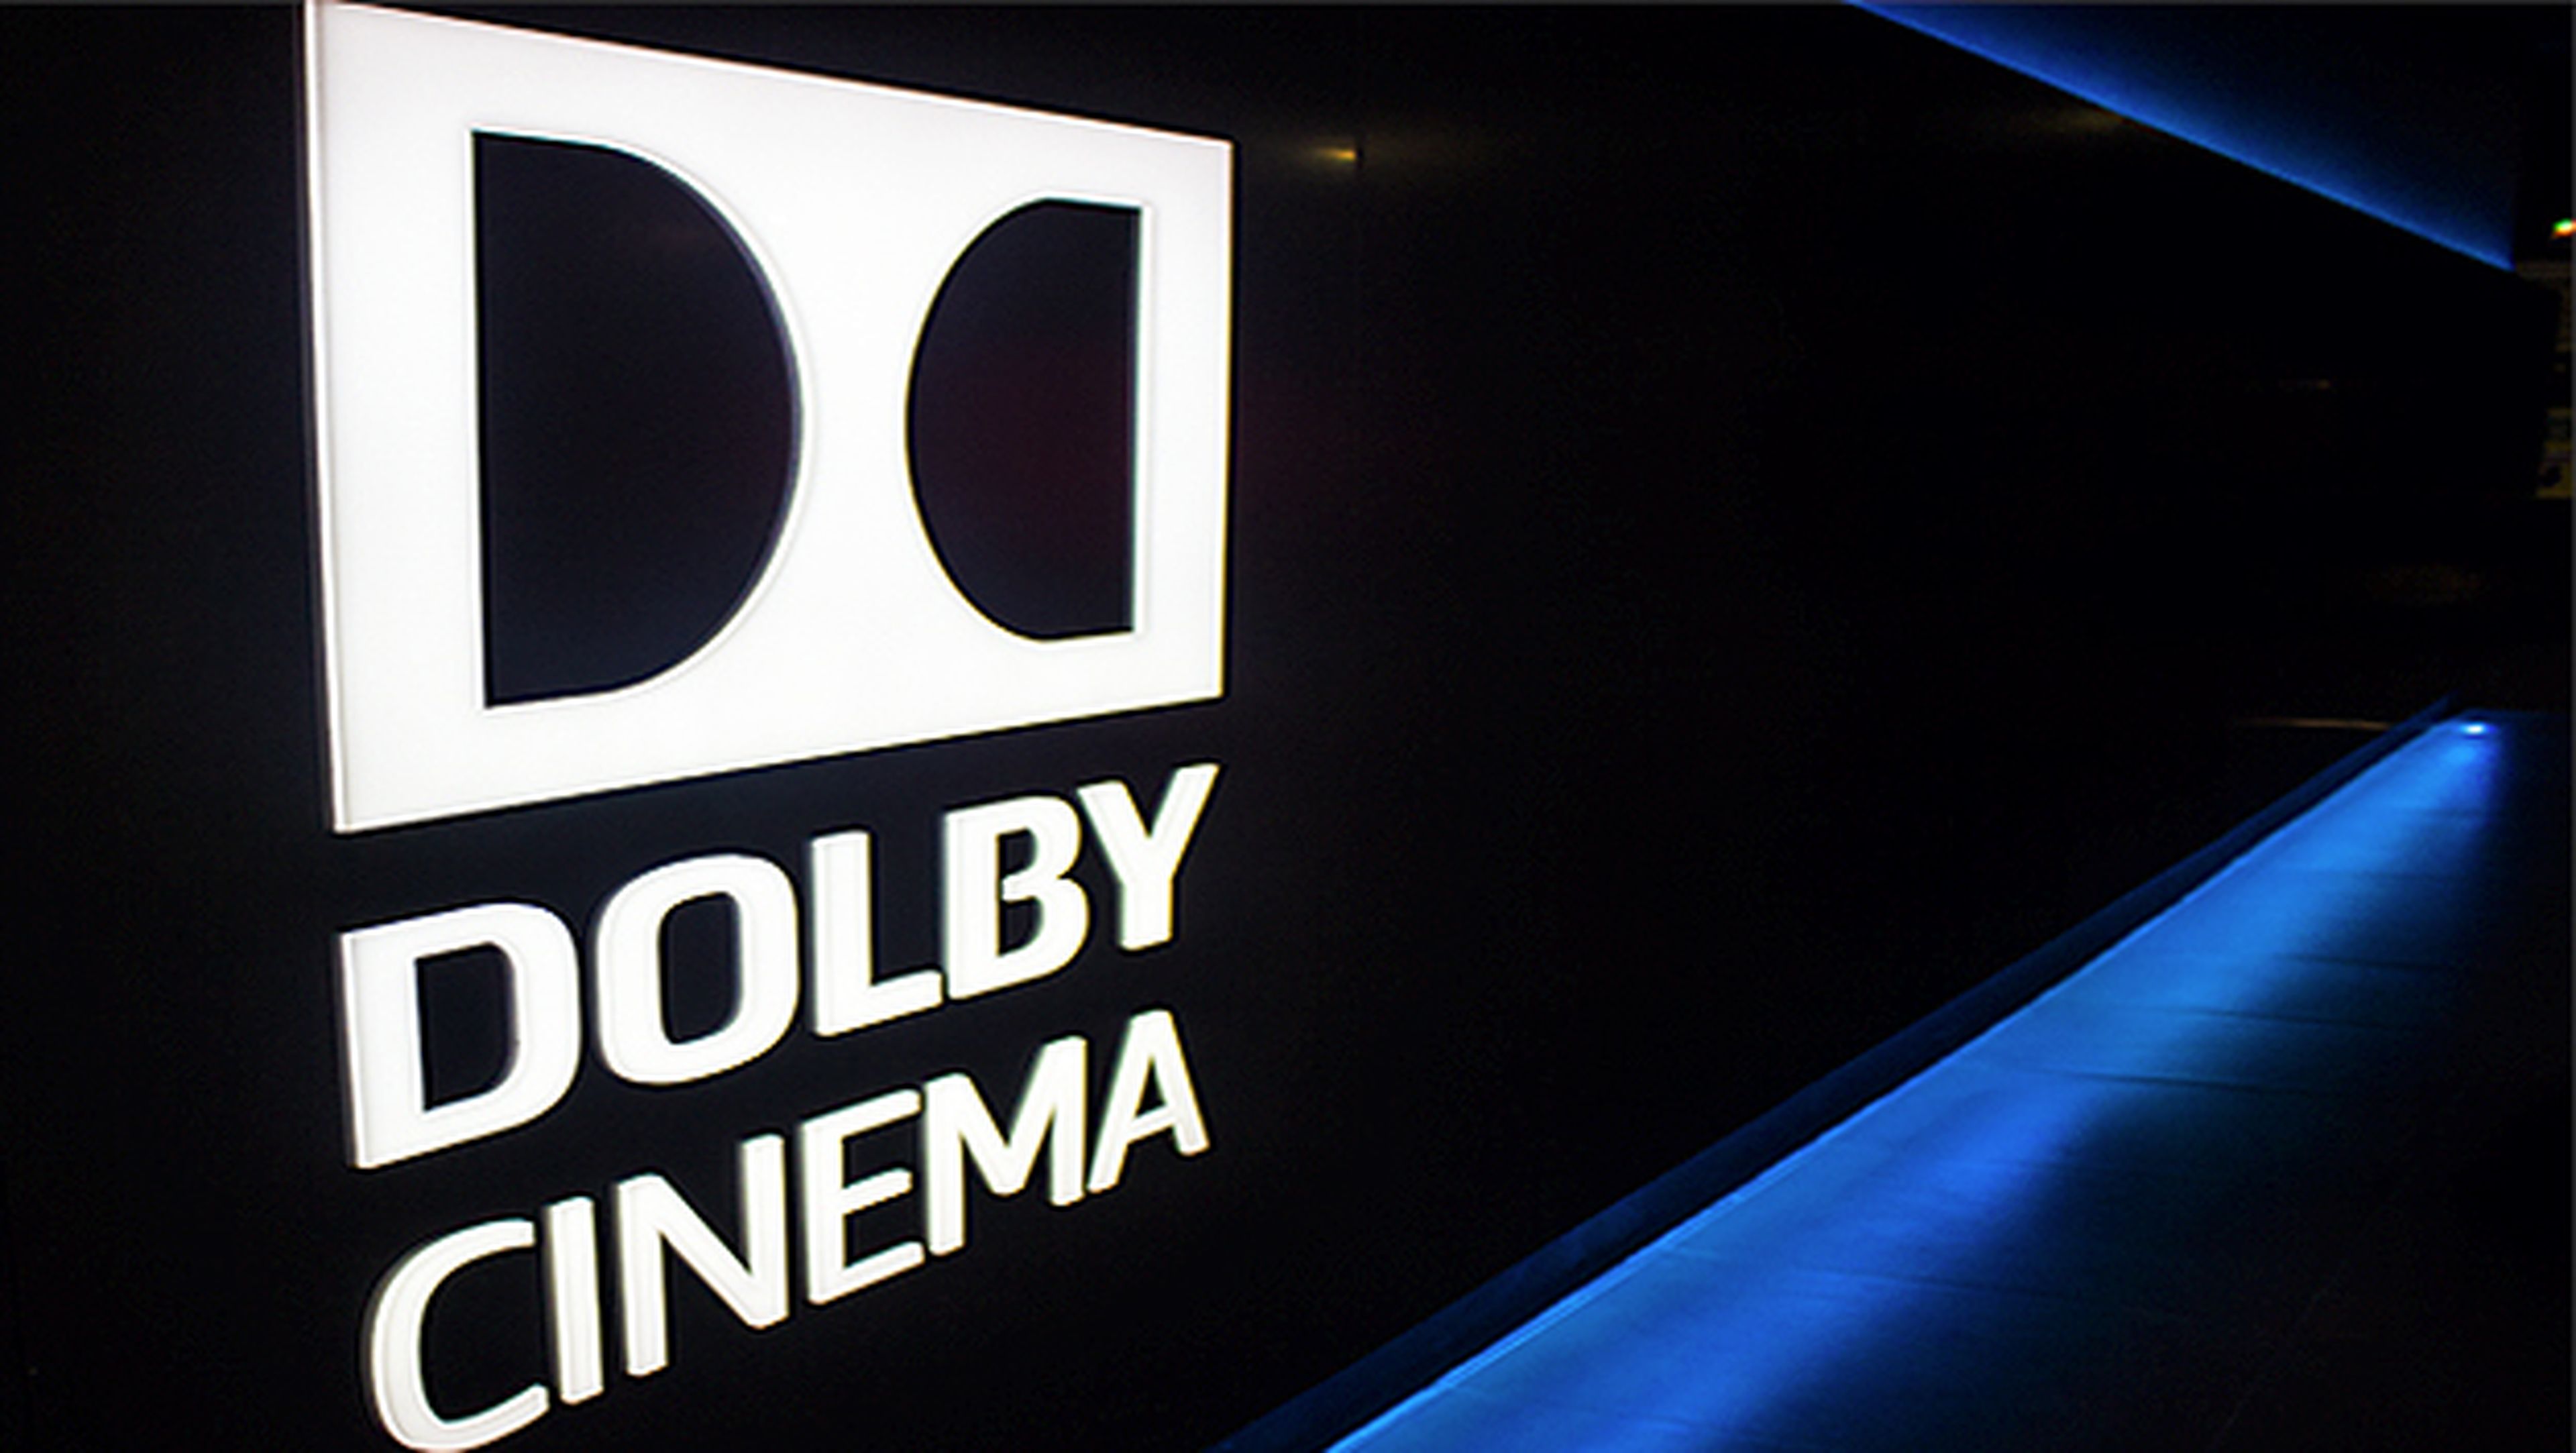 Dolby Cinema hará que quieras volver al cine